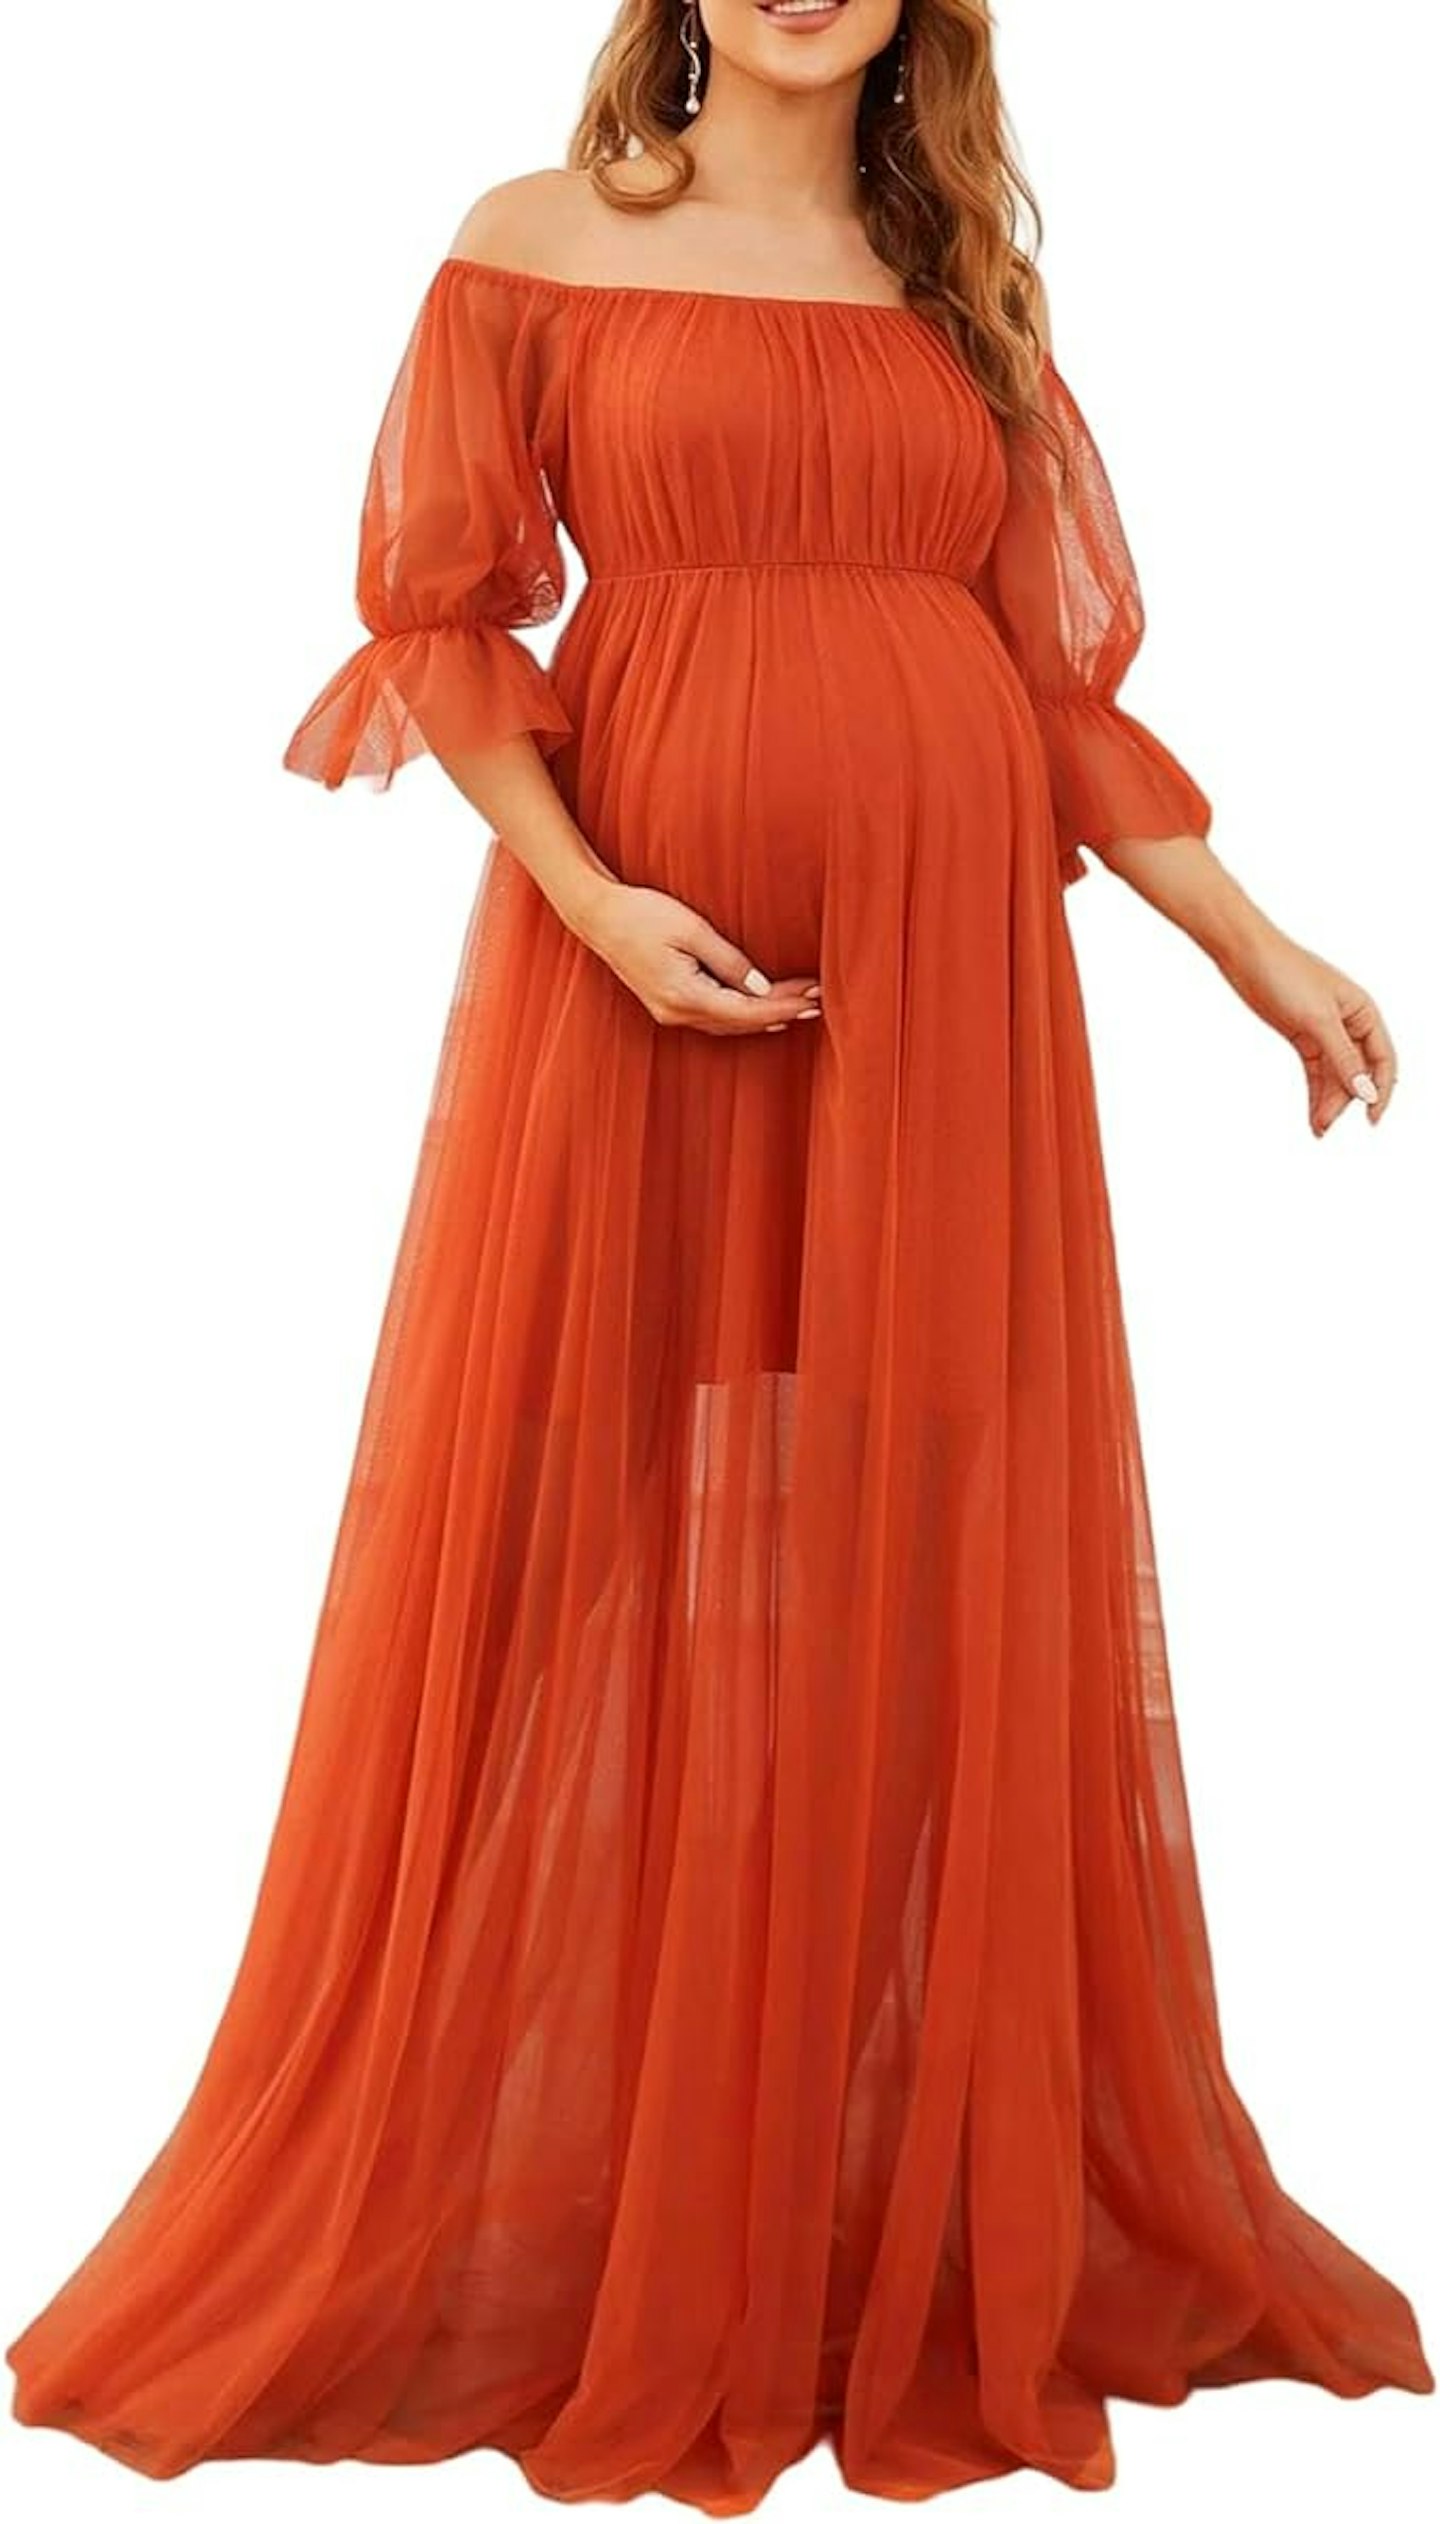 Zukmuk Women's Long maternity dress